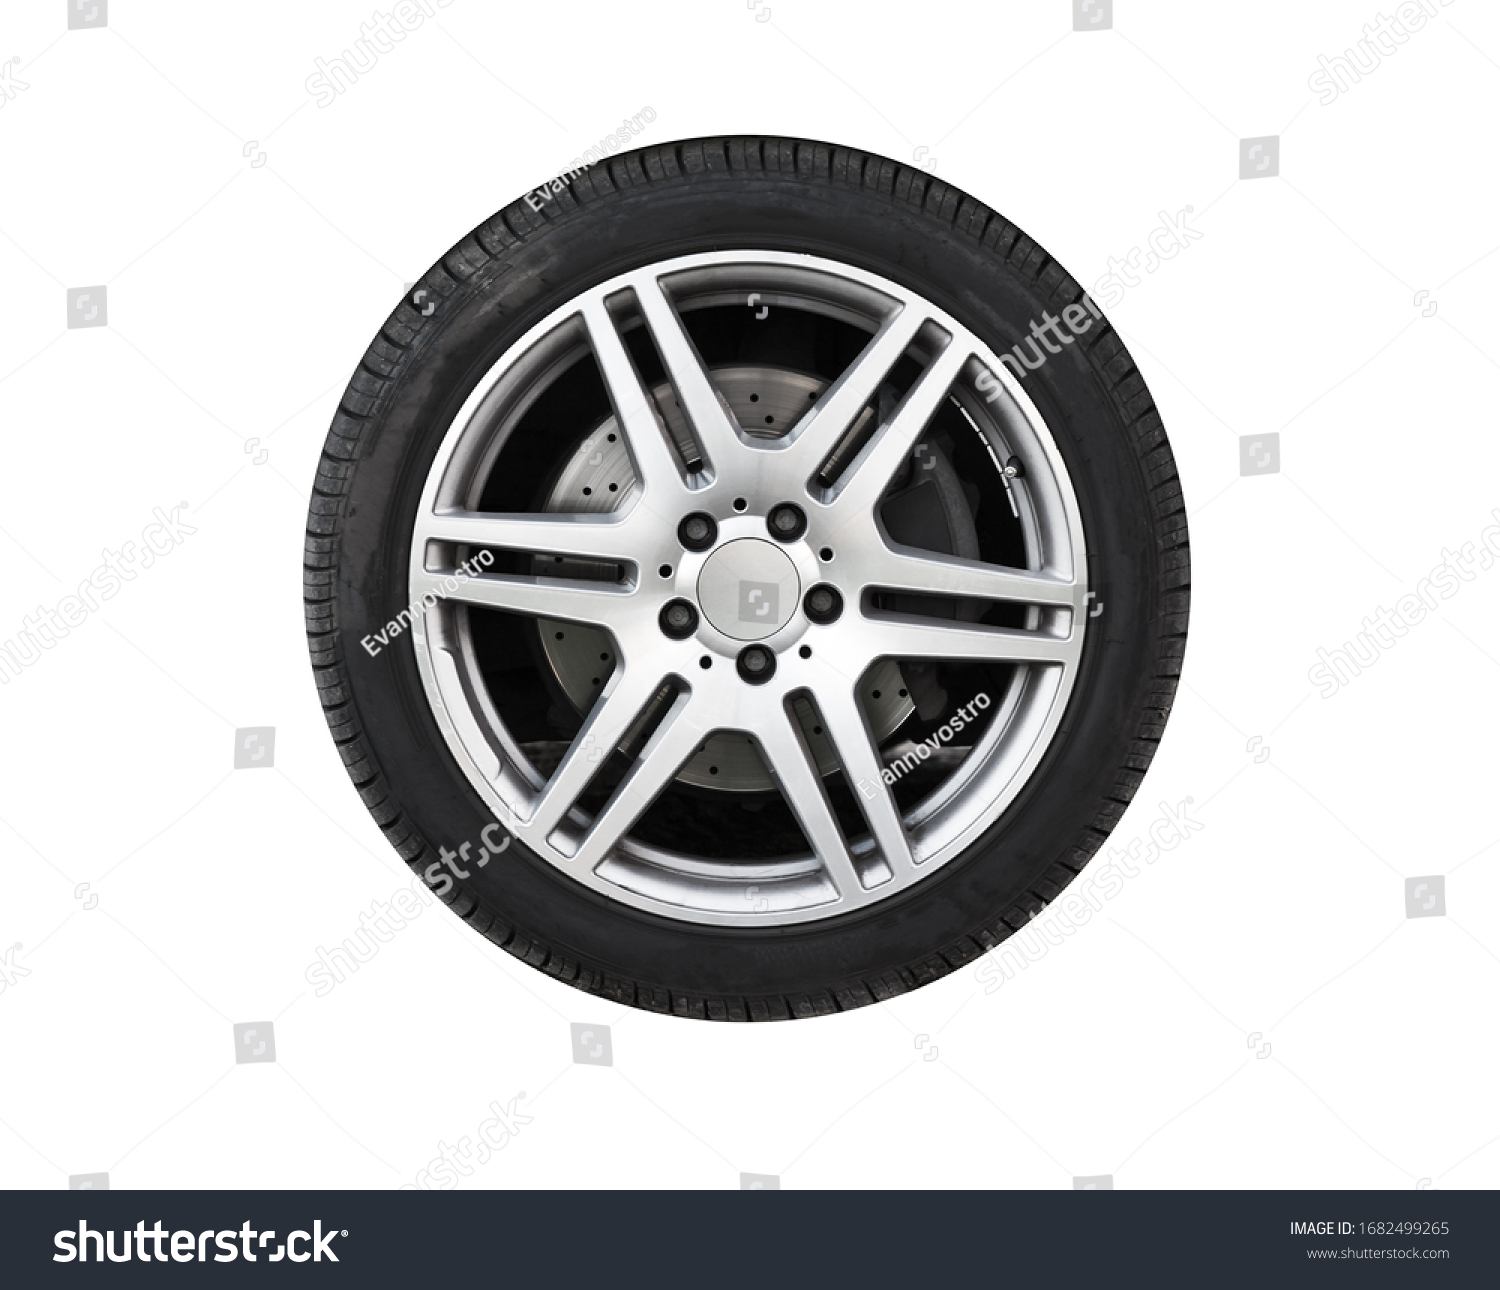 Shiny new car wheel isolated on white background #1682499265